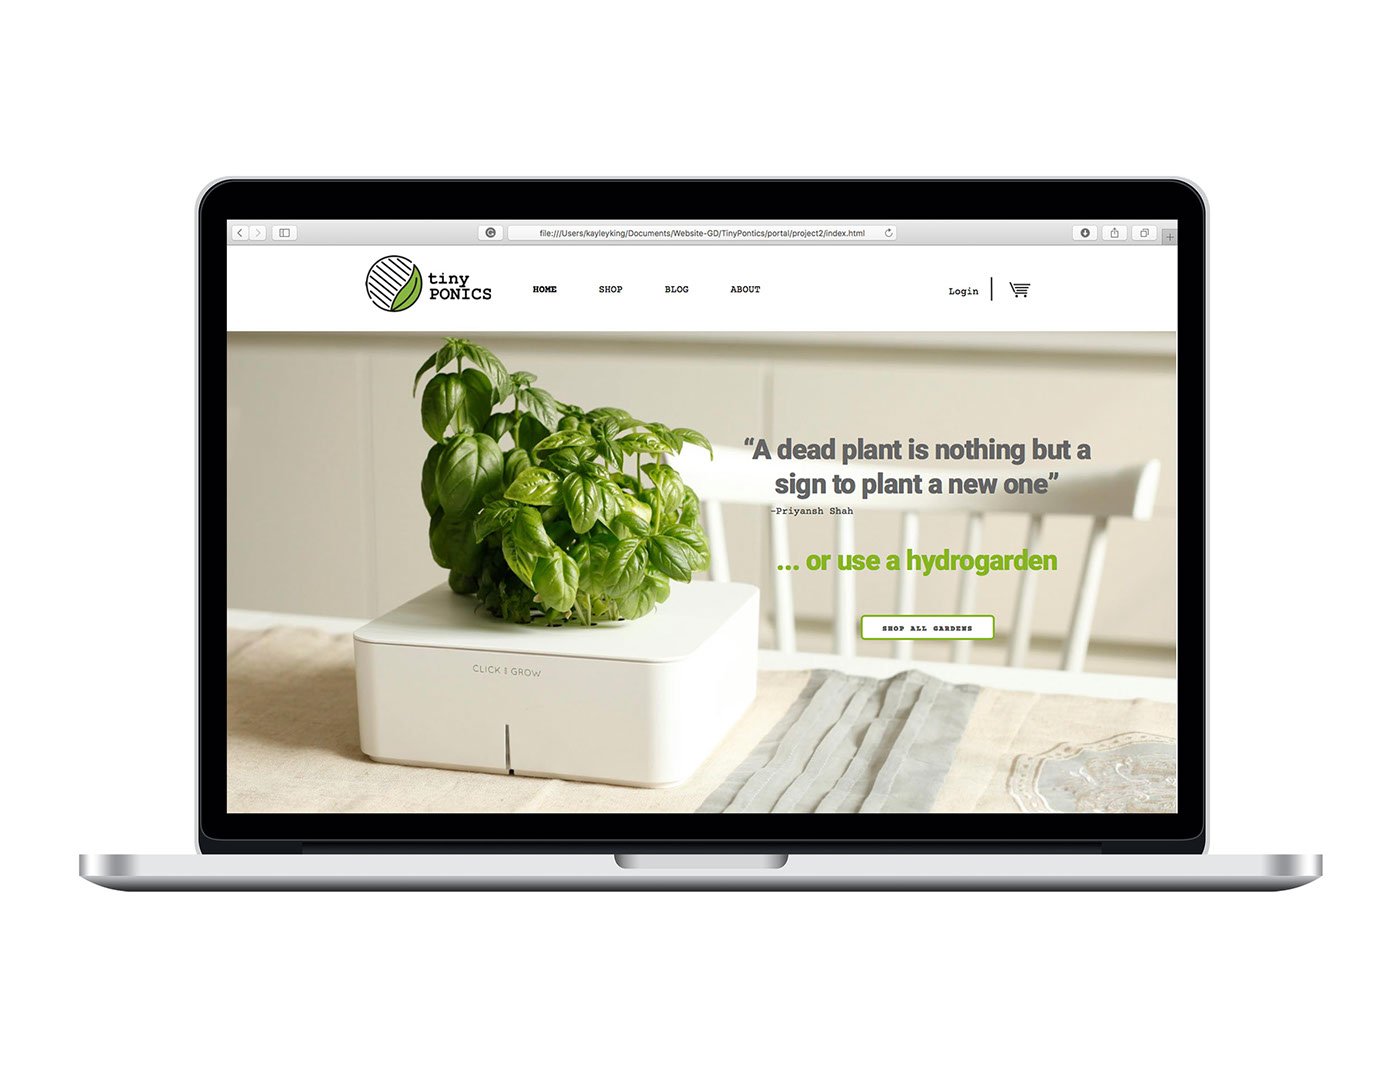 plants garden logo wwu identity Website brand adobeawards